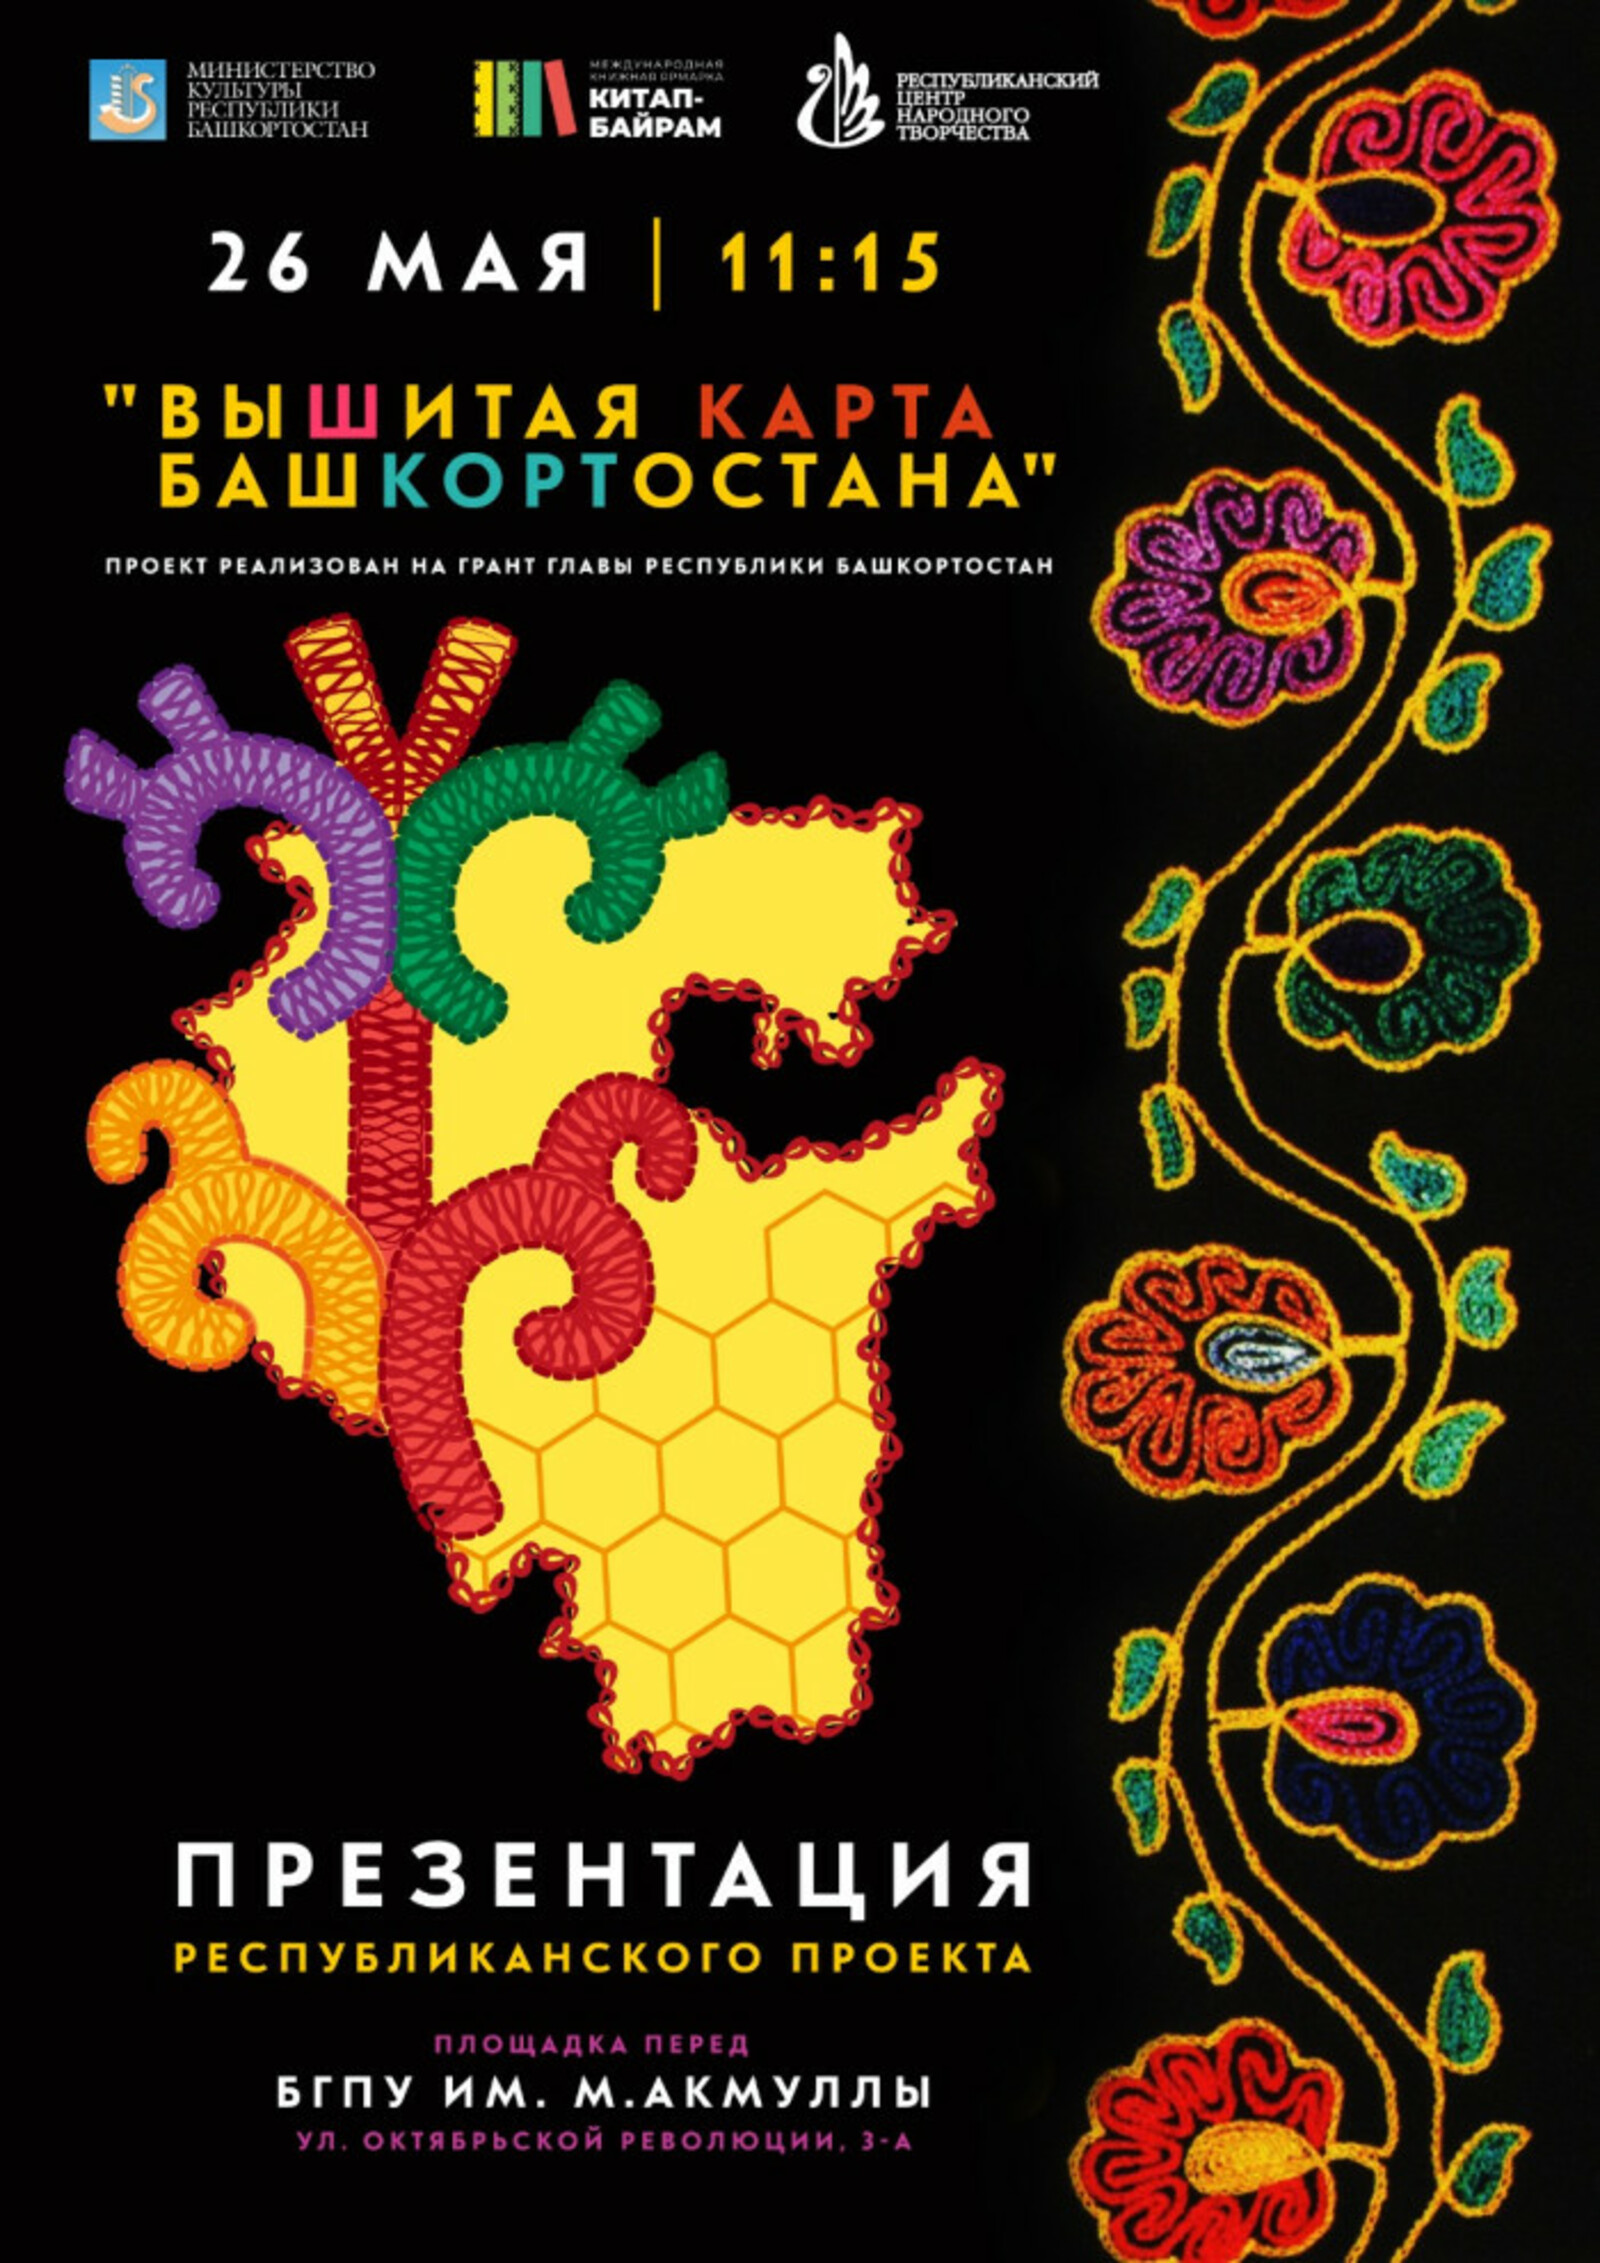 В Уфе проект «Вышитая карта Башкортостана» включит семинар по вышивке